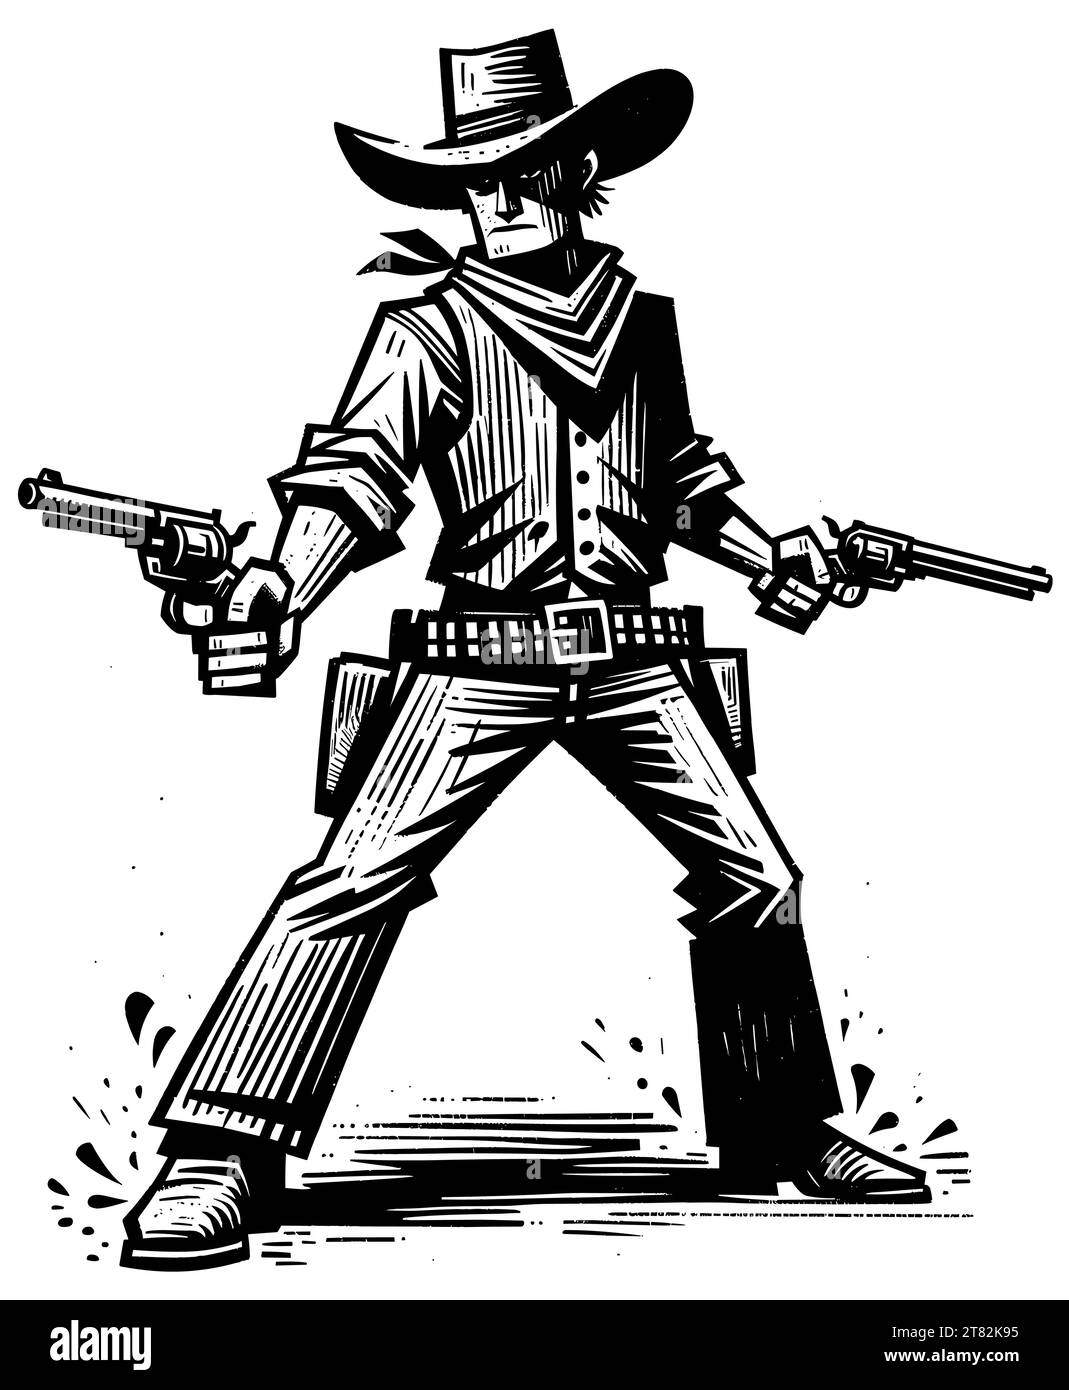 Zweifach schwingender Cowboy in Haltung, Linolschnitt schwarz-weiß. Stock Vektor